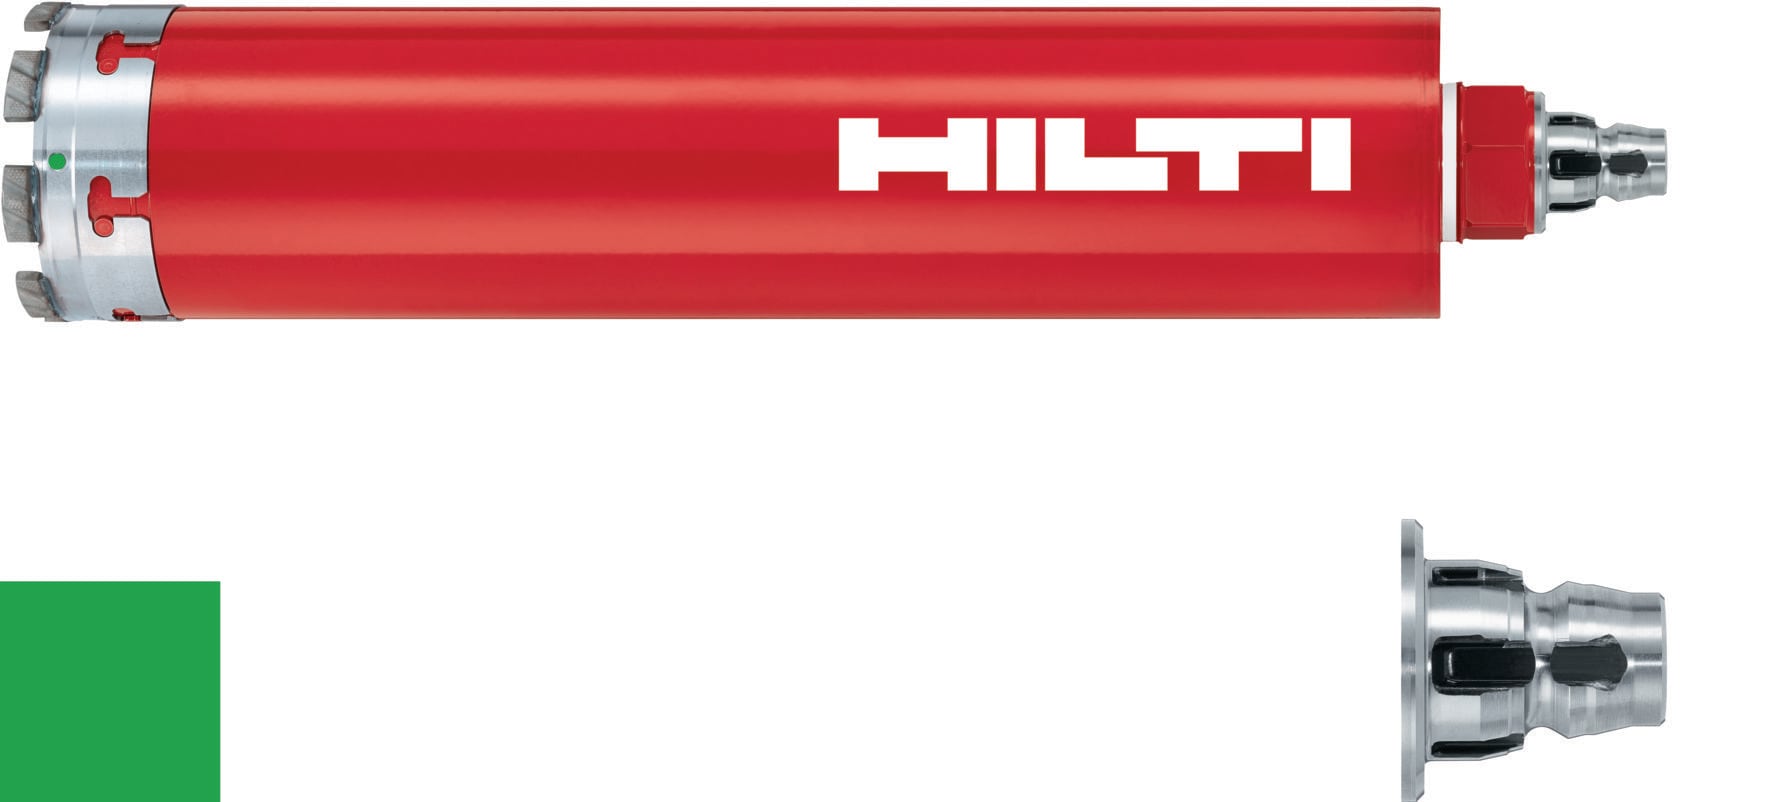 HILTI ヒルティ BX 3用ピン (連発) X-P 17 B3 MX (400本) コンクリート(ハード)17mm 3558702 - 1